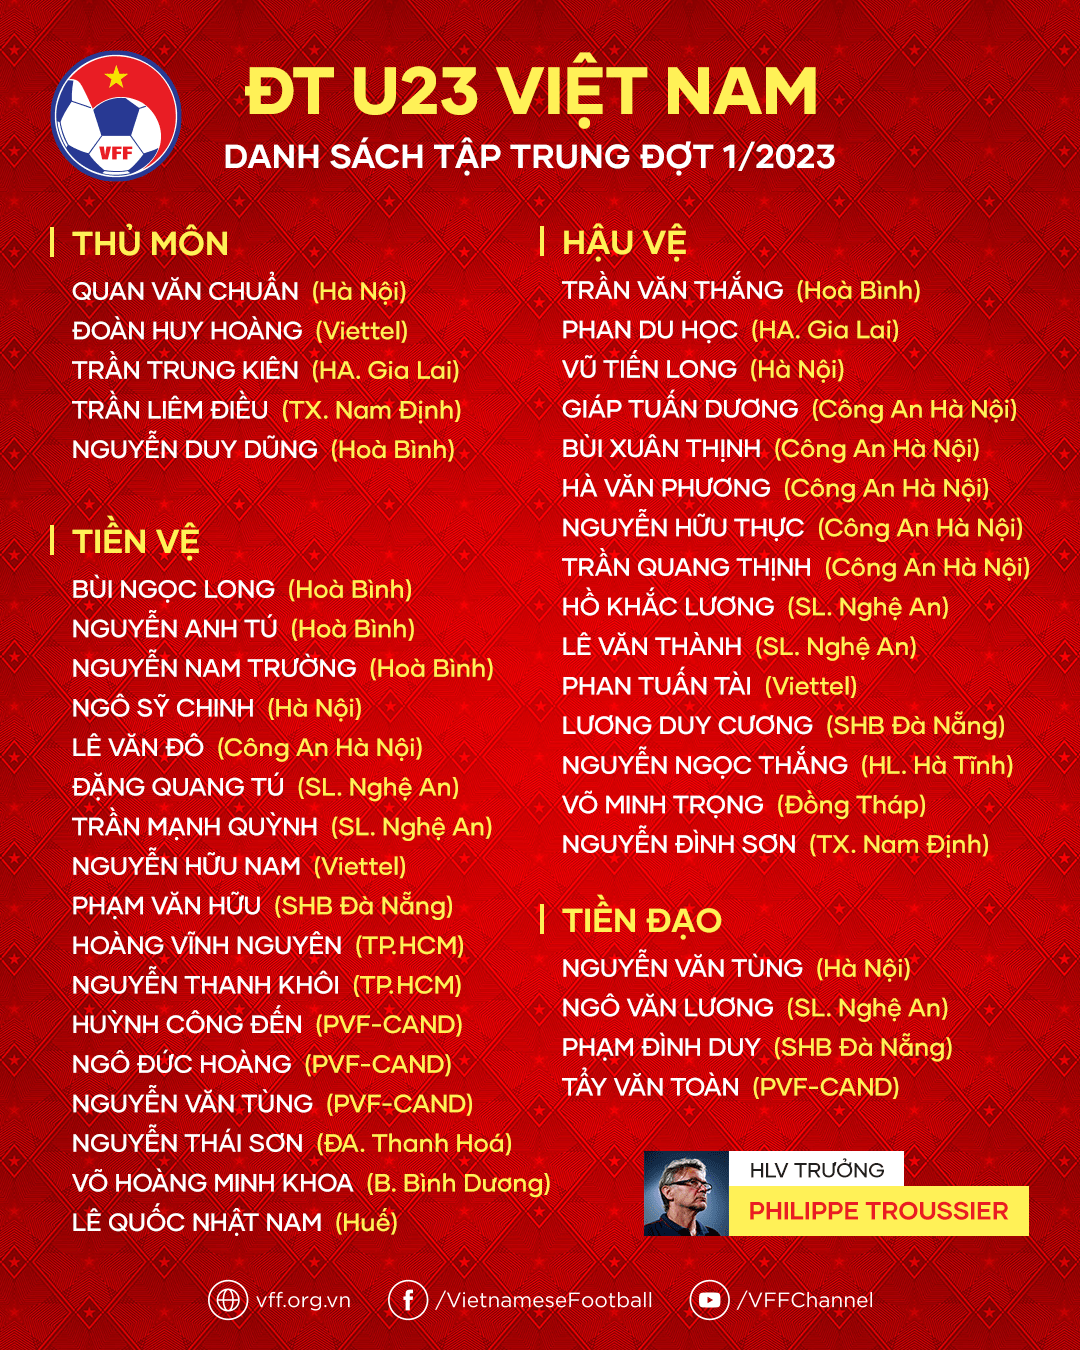  Danh sách 41 cầu thủ của U23 Việt Nam trong đợt tập trung đầu tiên